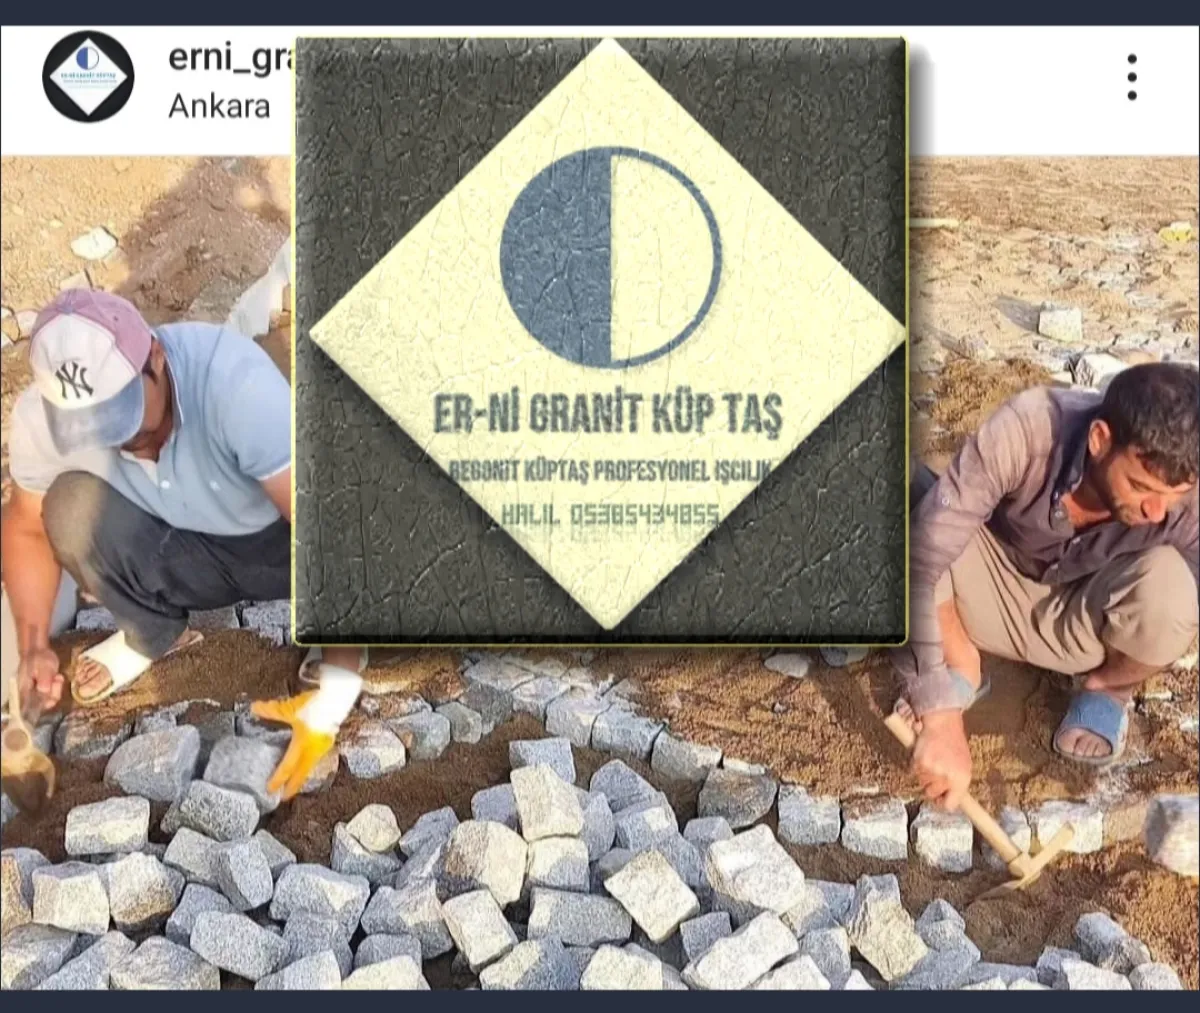 Erni granit küp taş uygulama ekibi İzmir merkez - Büyük 6